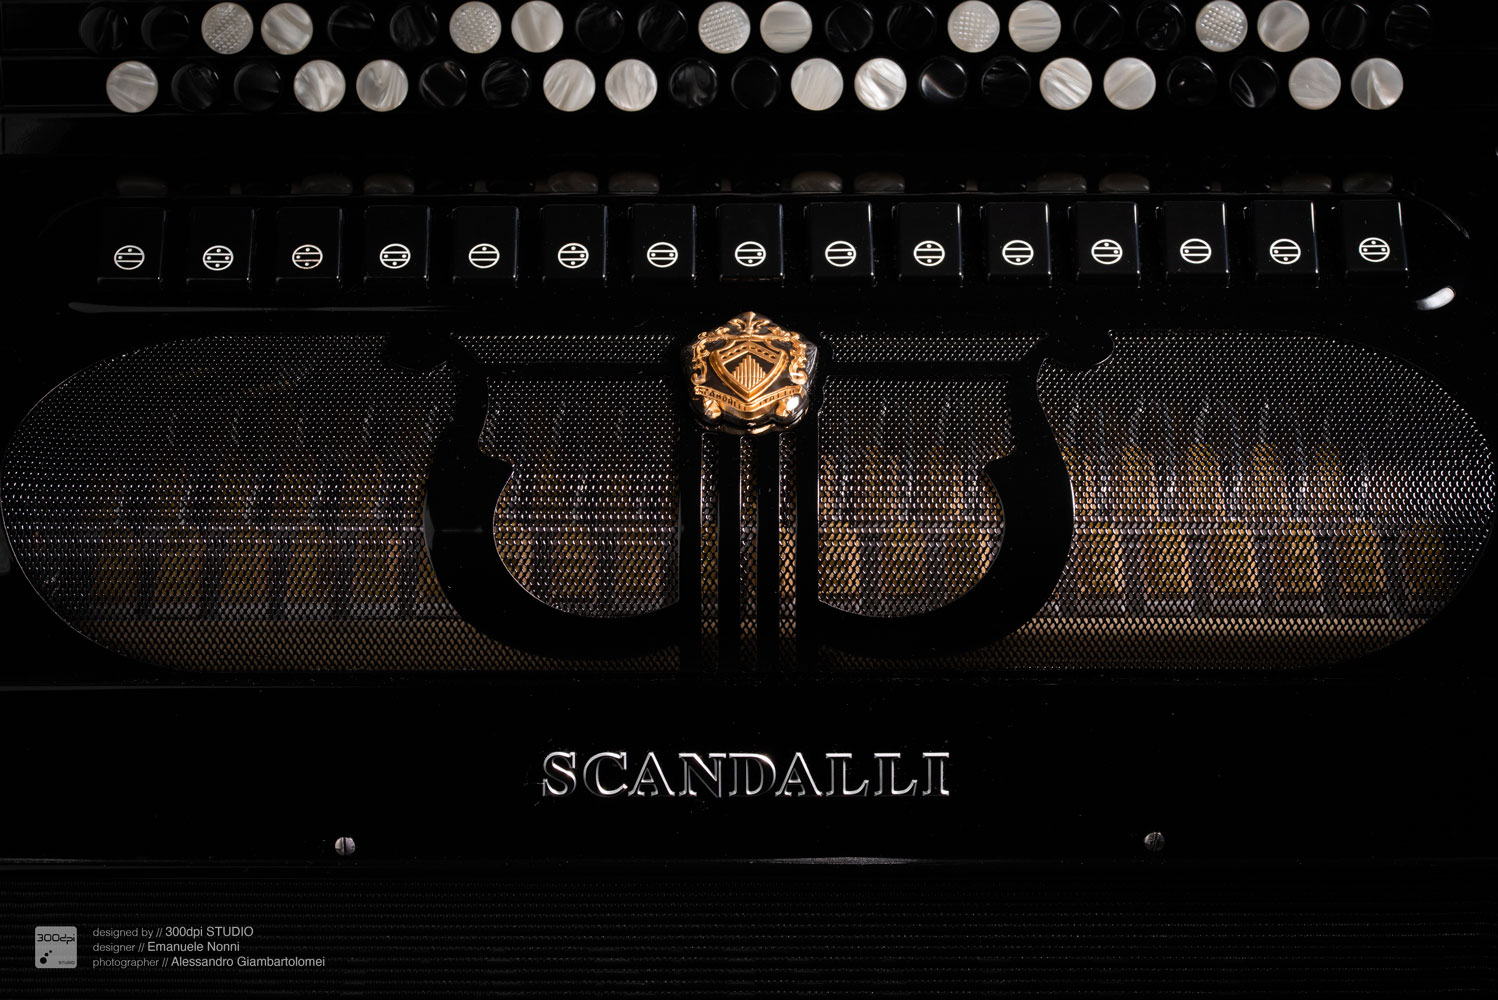 MUSA fisarmonica Scandalli Accordions - design 300dpi STUDIO Emanuele Nonni